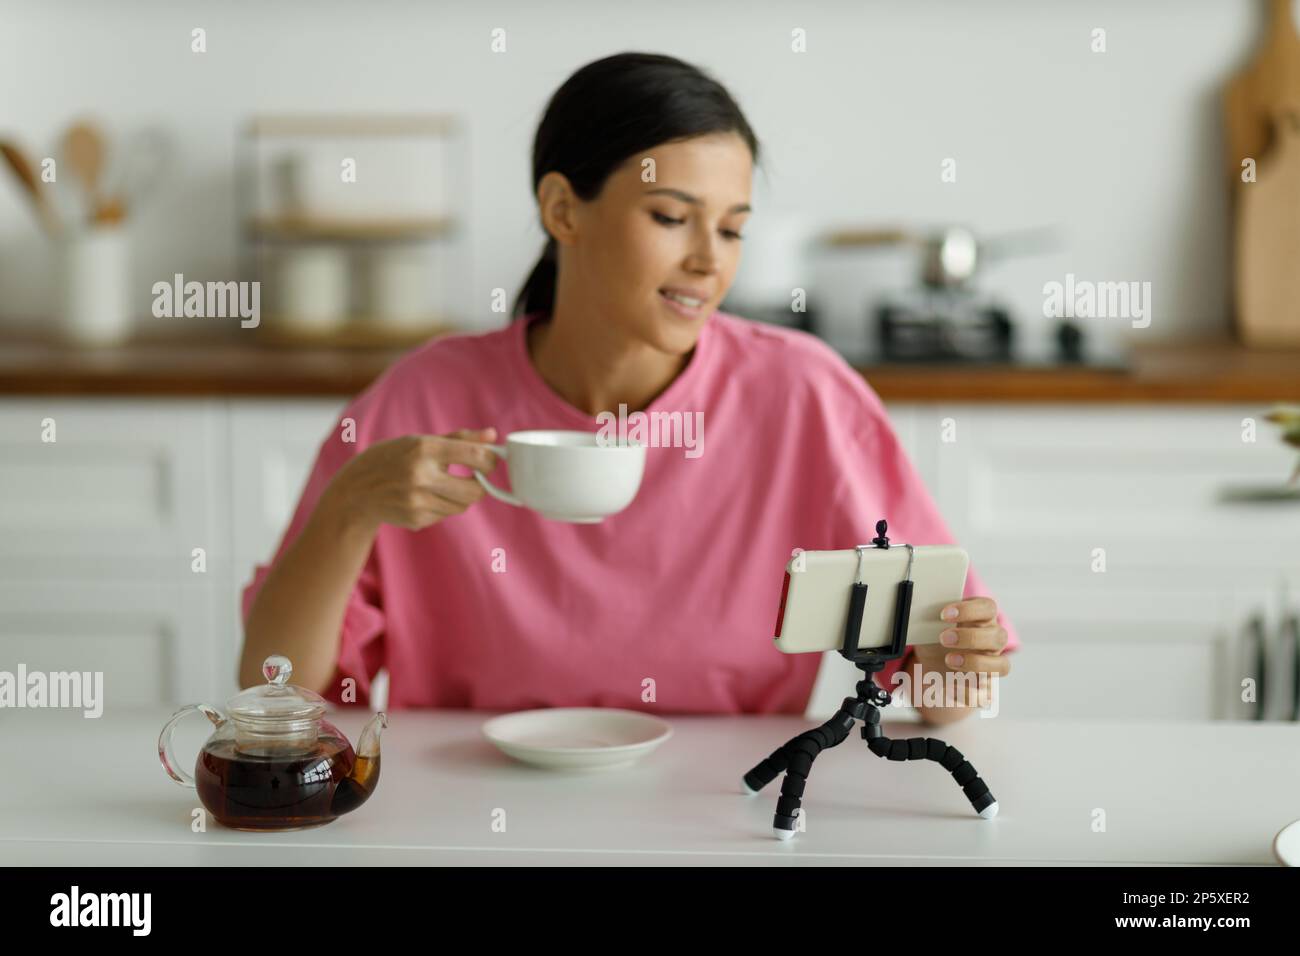 La mujer morena joven sonriente atractiva en la camiseta oversize rosa está bebiendo té en la cocina. Muchacha bonita feliz con la sonrisa blanca como la nieve saluda amigo, co Foto de stock